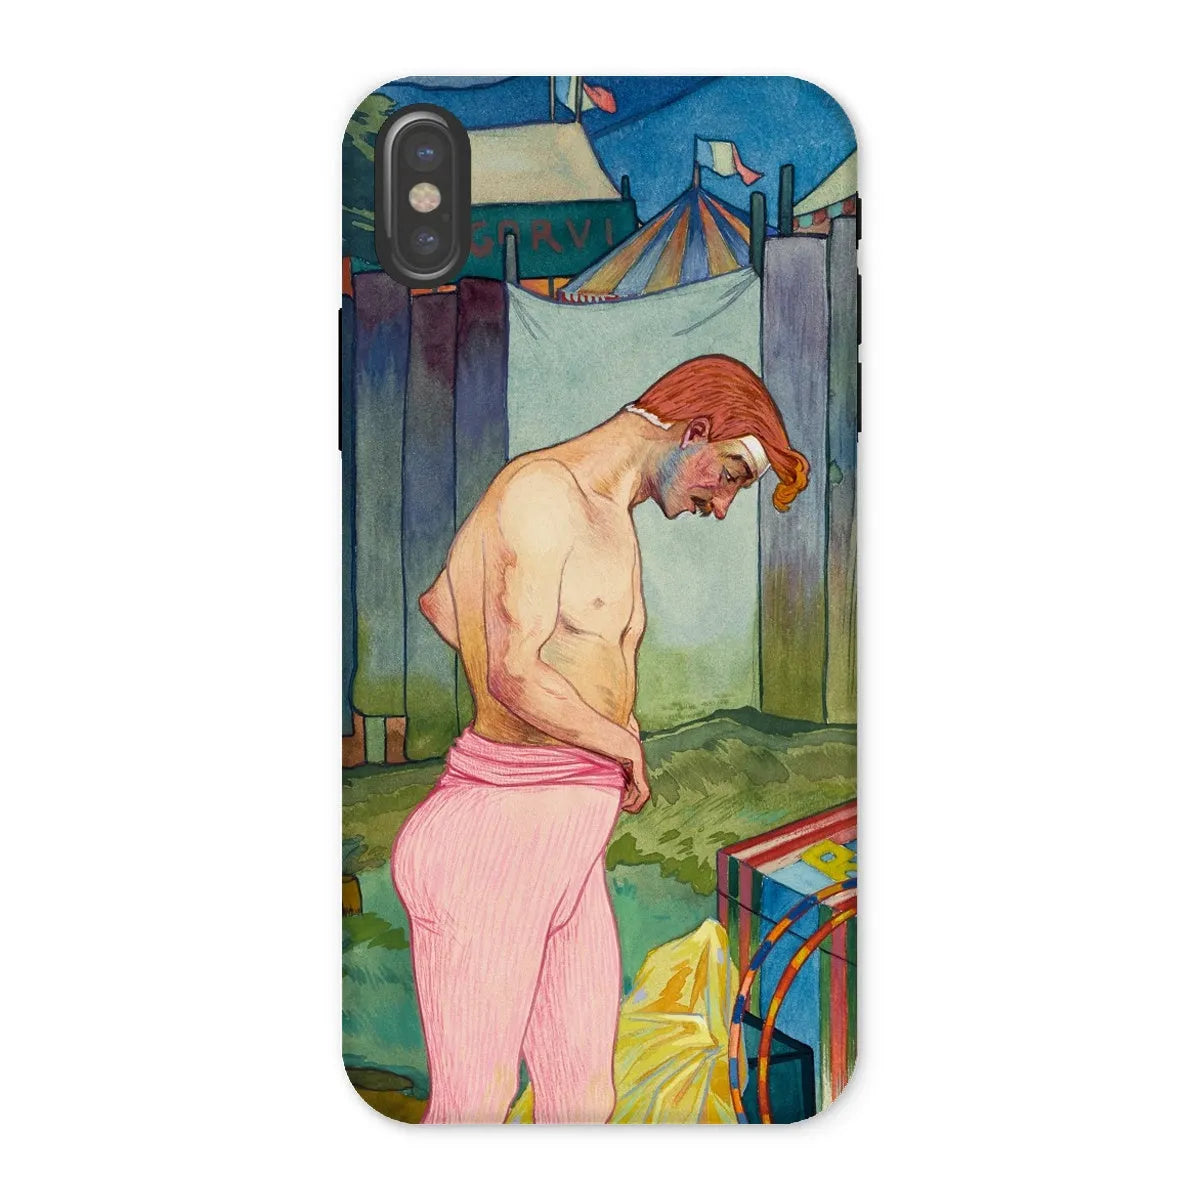 Le Cirque Corvi - Georges De Feure Art Nouveau Phone Case - Iphone x / Matte - Mobile Phone Cases - Aesthetic Art